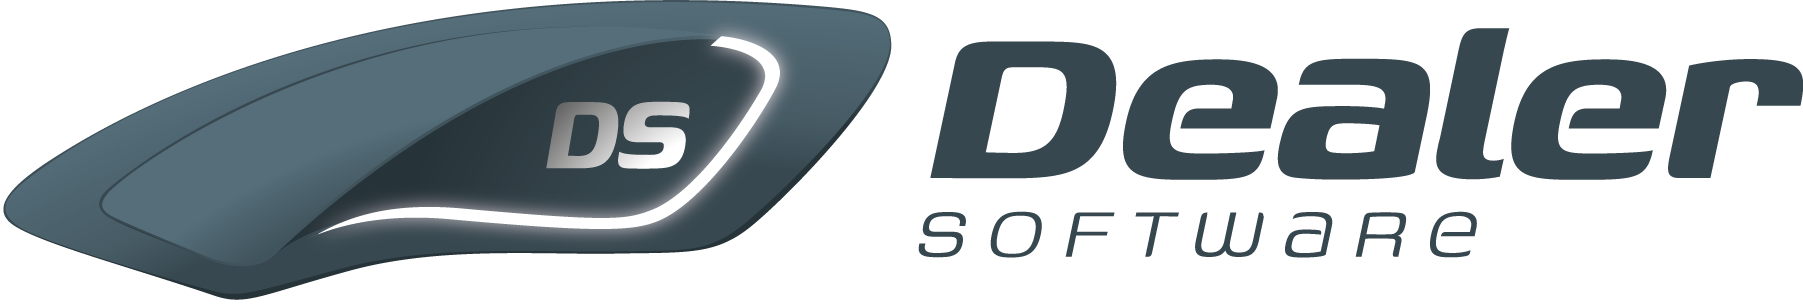 Dealer Software Logo